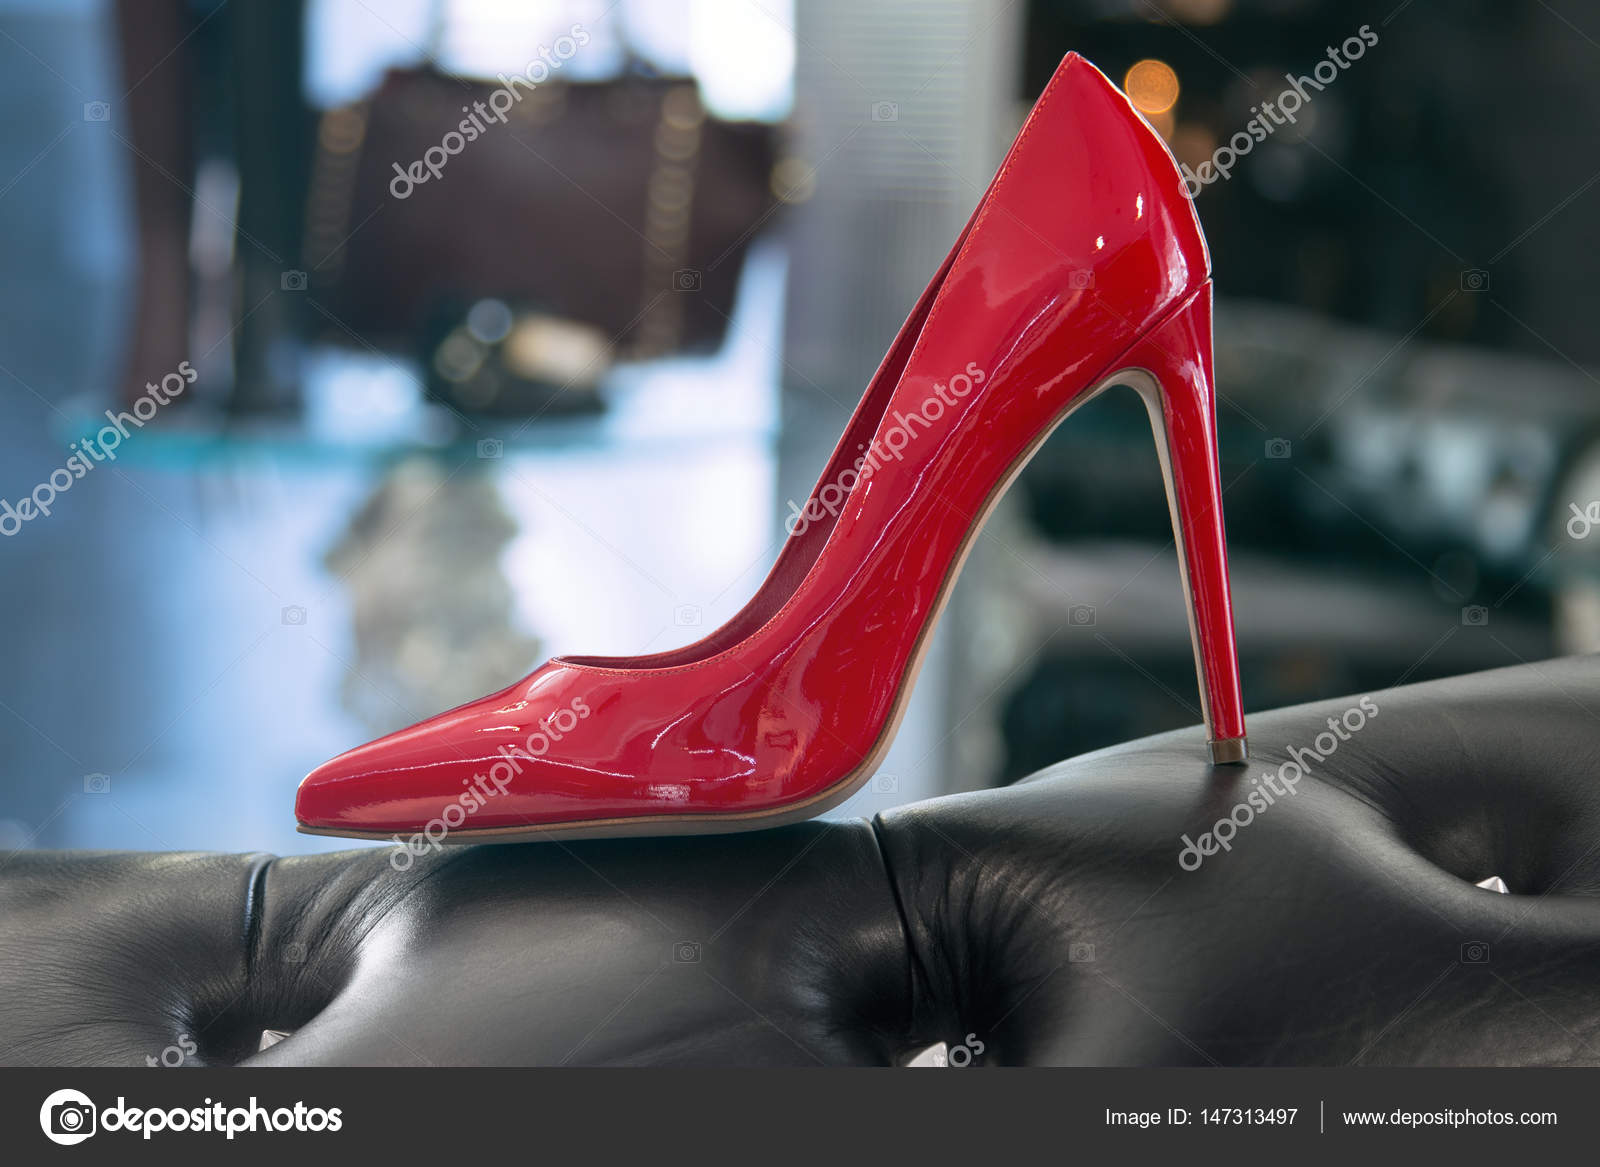 telescopio infinito Taxi Zapatos rojos de tacón alto para mujer: fotografía de stock © forton  #147313497 | Depositphotos